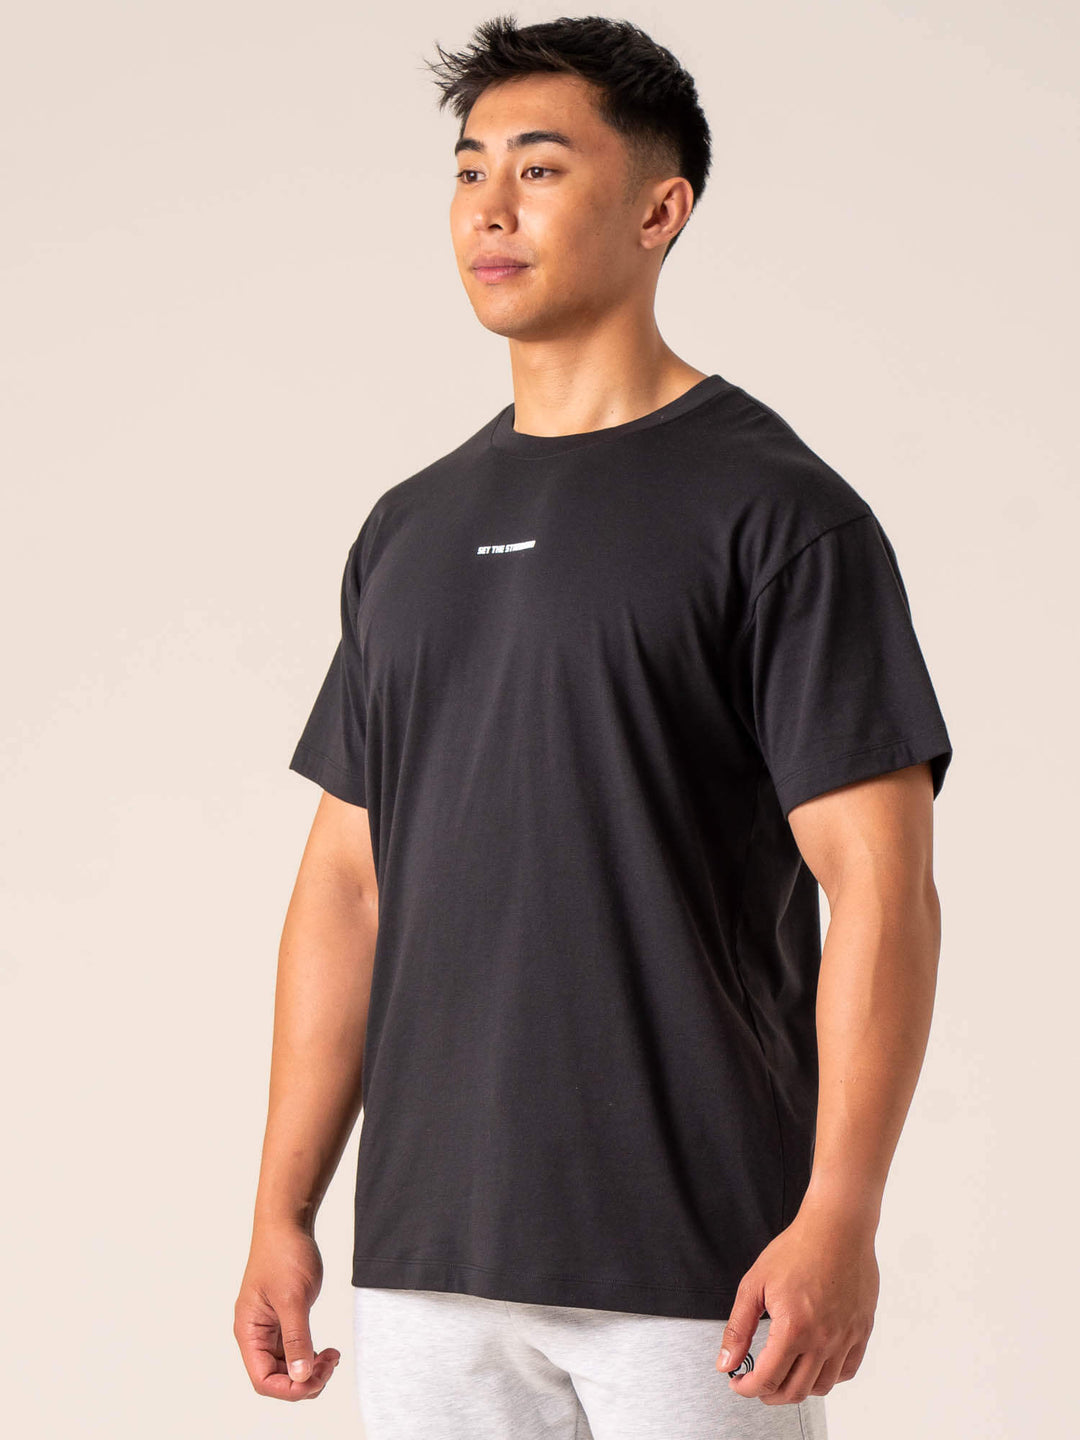 Emerge Oversized T-Shirt - Faded Black Clothing Ryderwear 